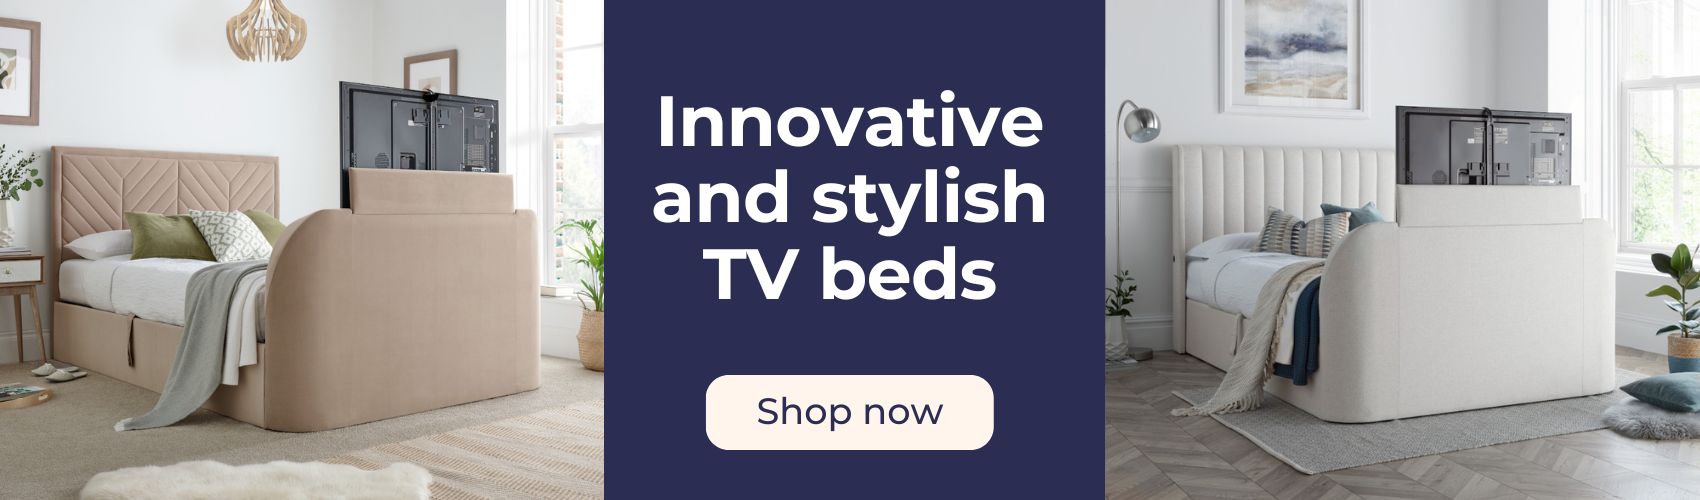 Shop TV beds